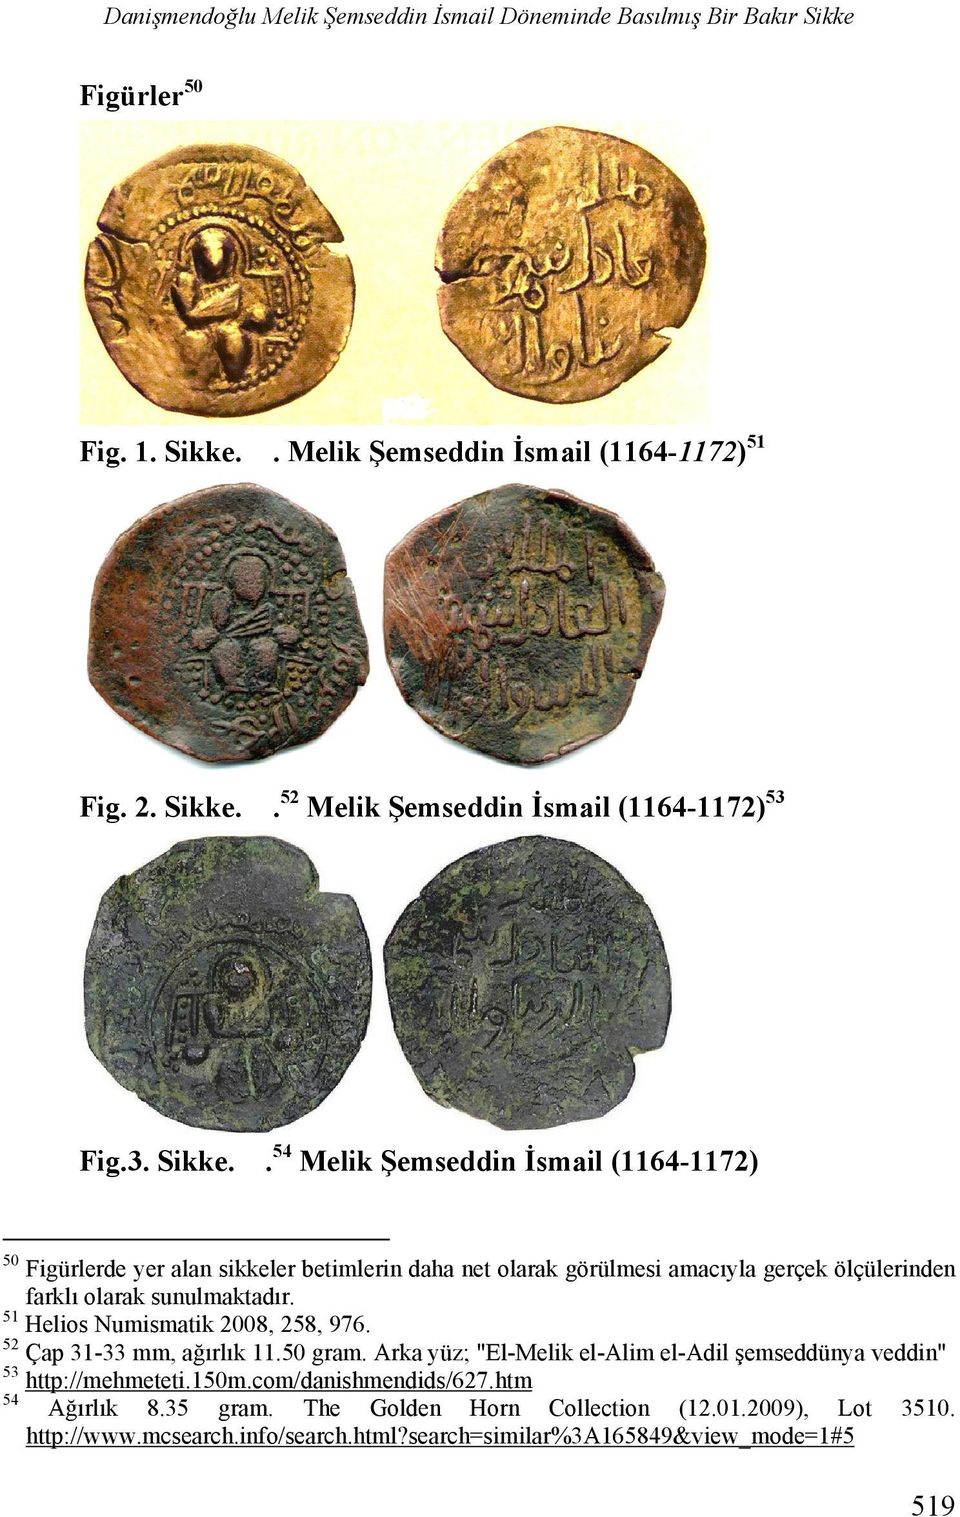 51 Helios Numismatik 2008, 258, 976. 52 Çap 31-33 mm, ağırlık 11.50 gram. Arka yüz; "El-Melik el-alim el-adil şemseddünya veddin" 53 http://mehmeteti.150m.com/danishmendids/627.